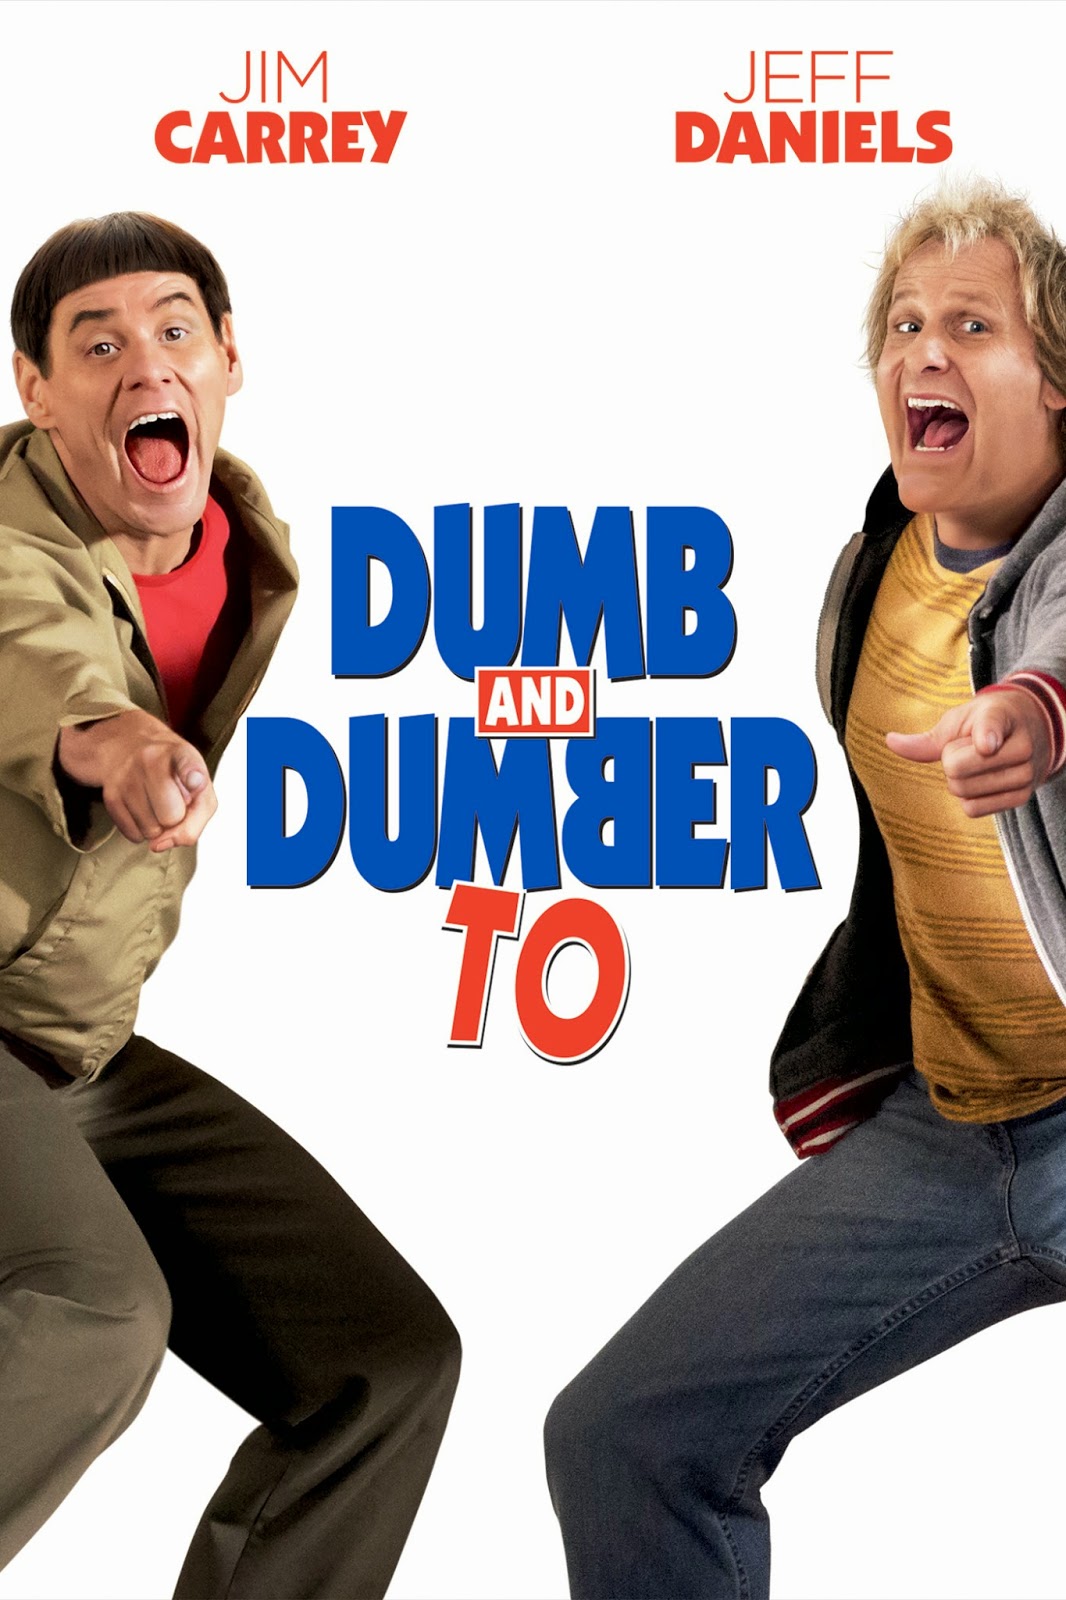 dumb and dumber 1 full movie